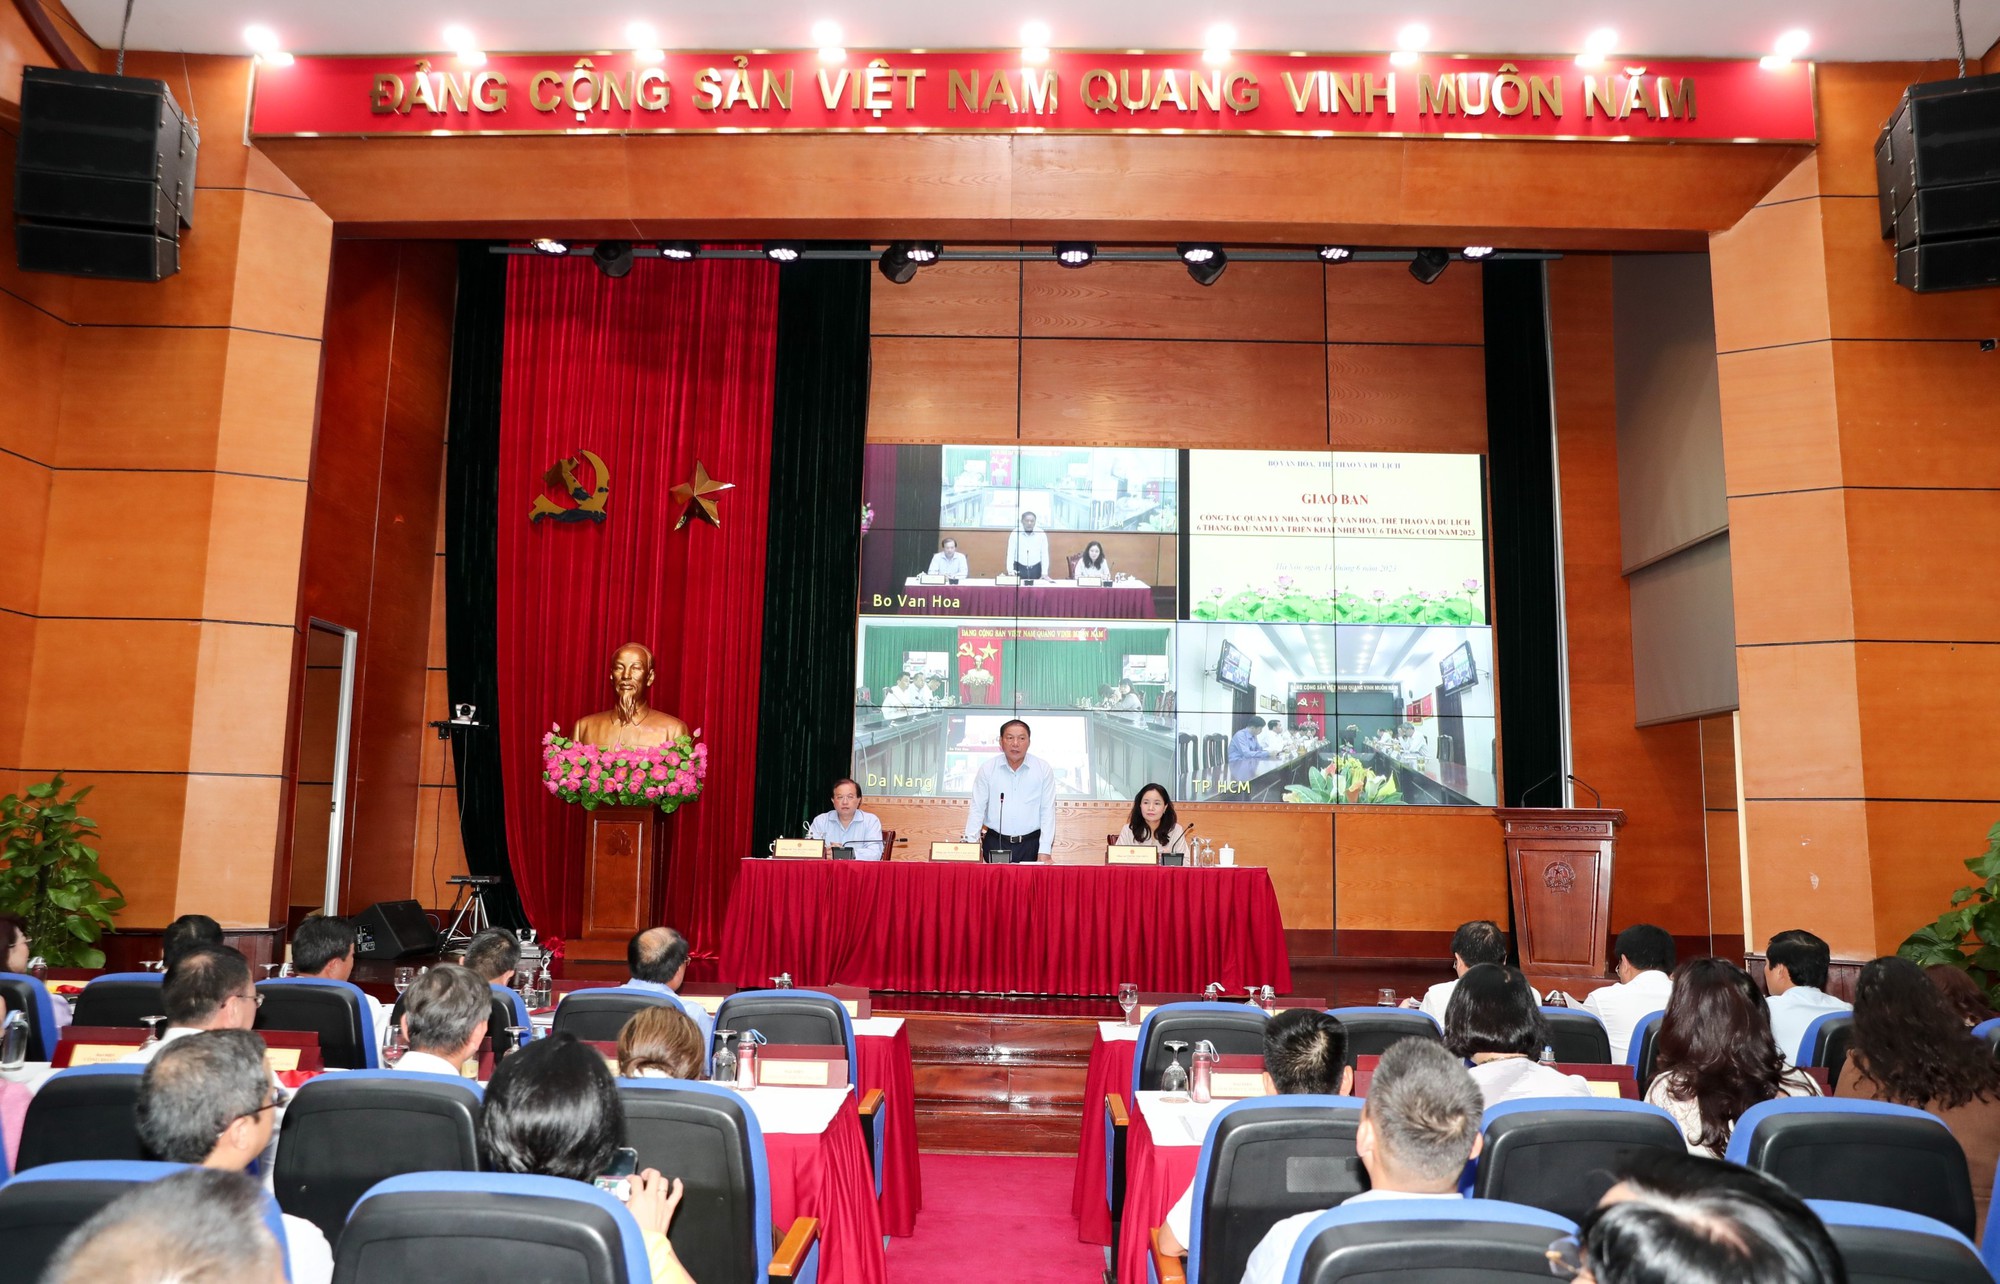 Bộ trưởng Nguyễn Văn Hùng: "Không né tránh, chọn việc dễ bỏ việc khó"